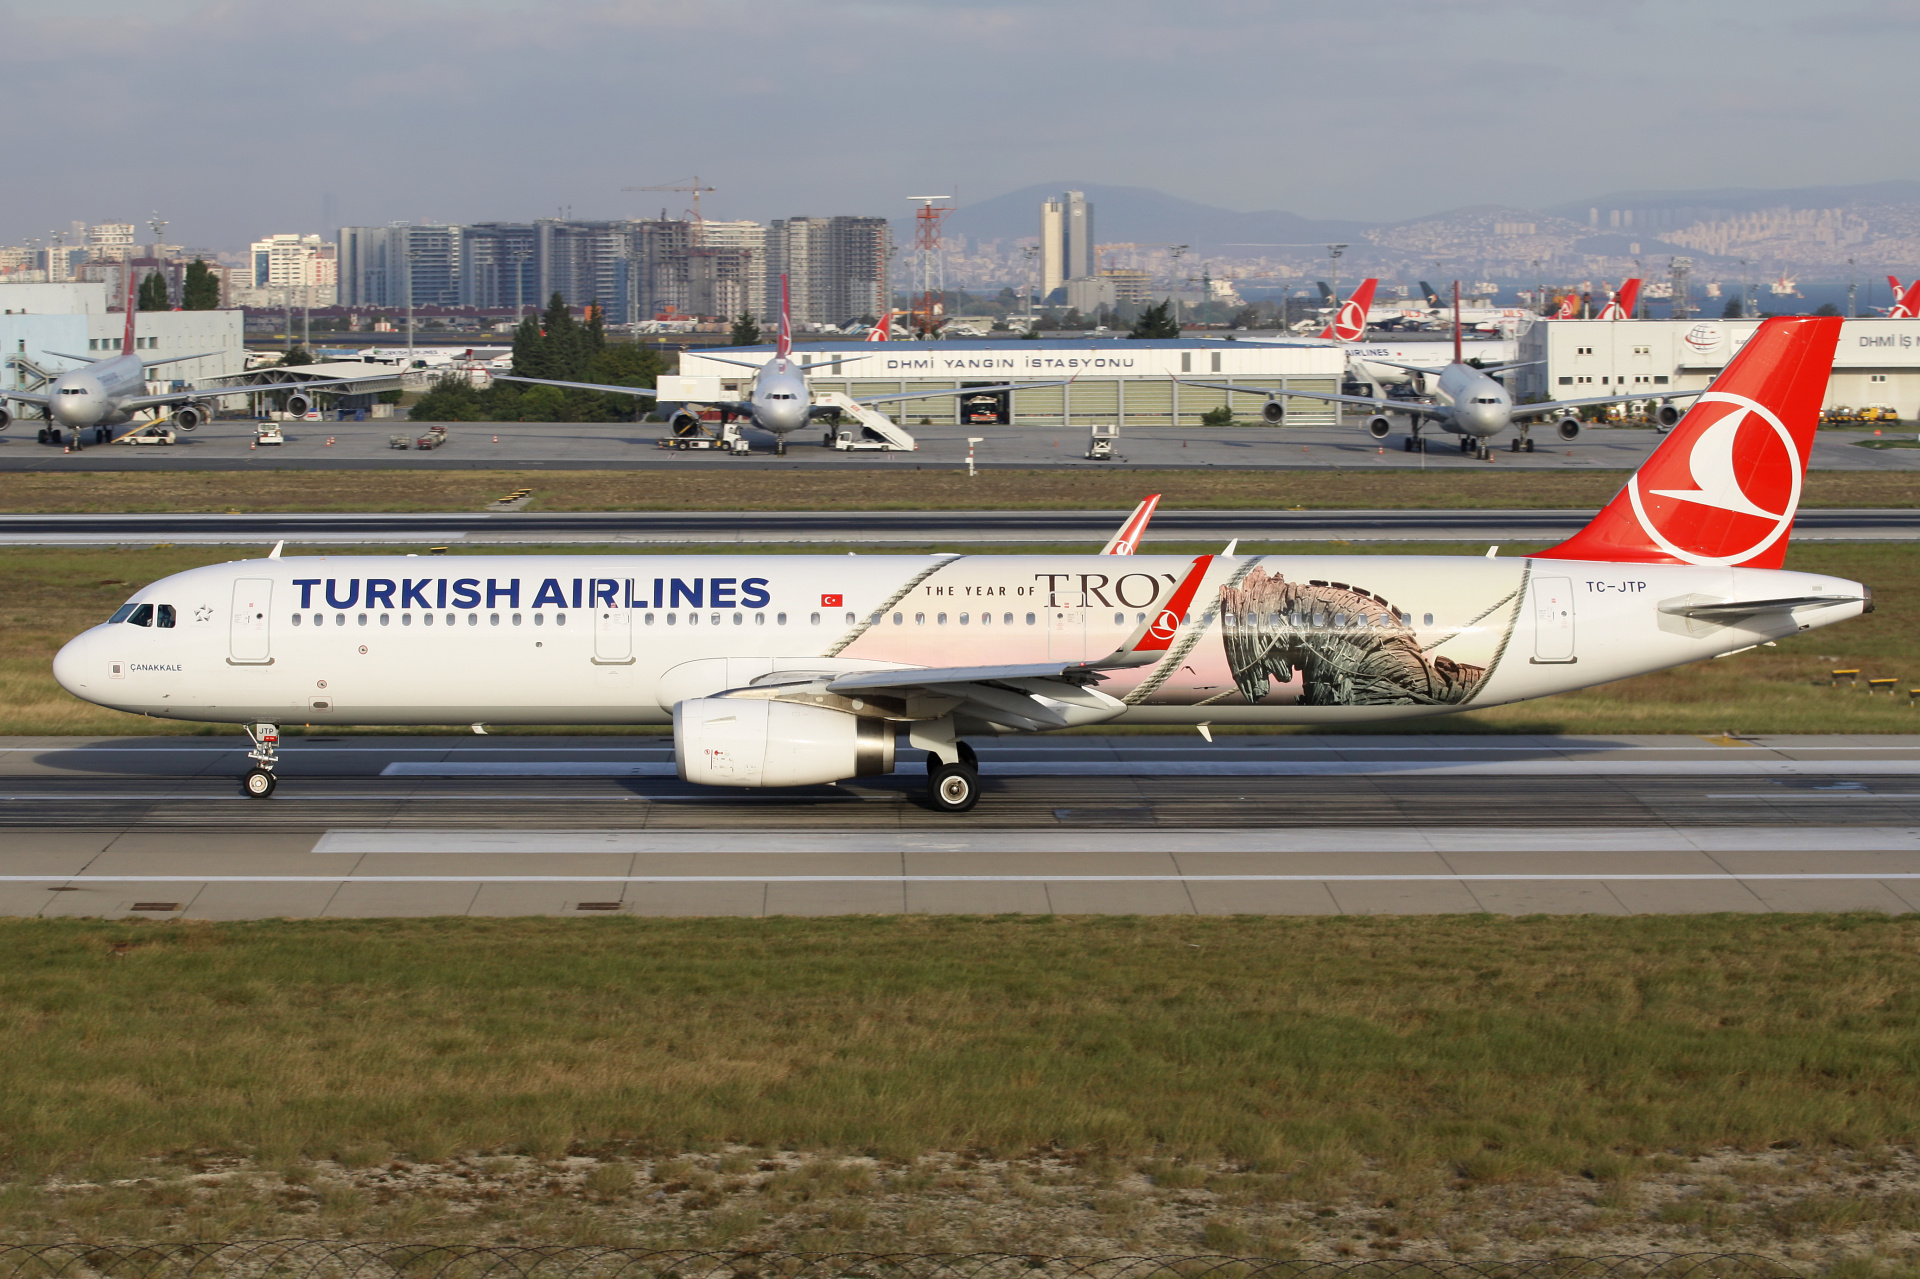 TC-JTP (malowanie The Year of Troy) (Samoloty » Port Lotniczy im. Atatürka w Stambule » Airbus A321-200 » THY Turkish Airlines)